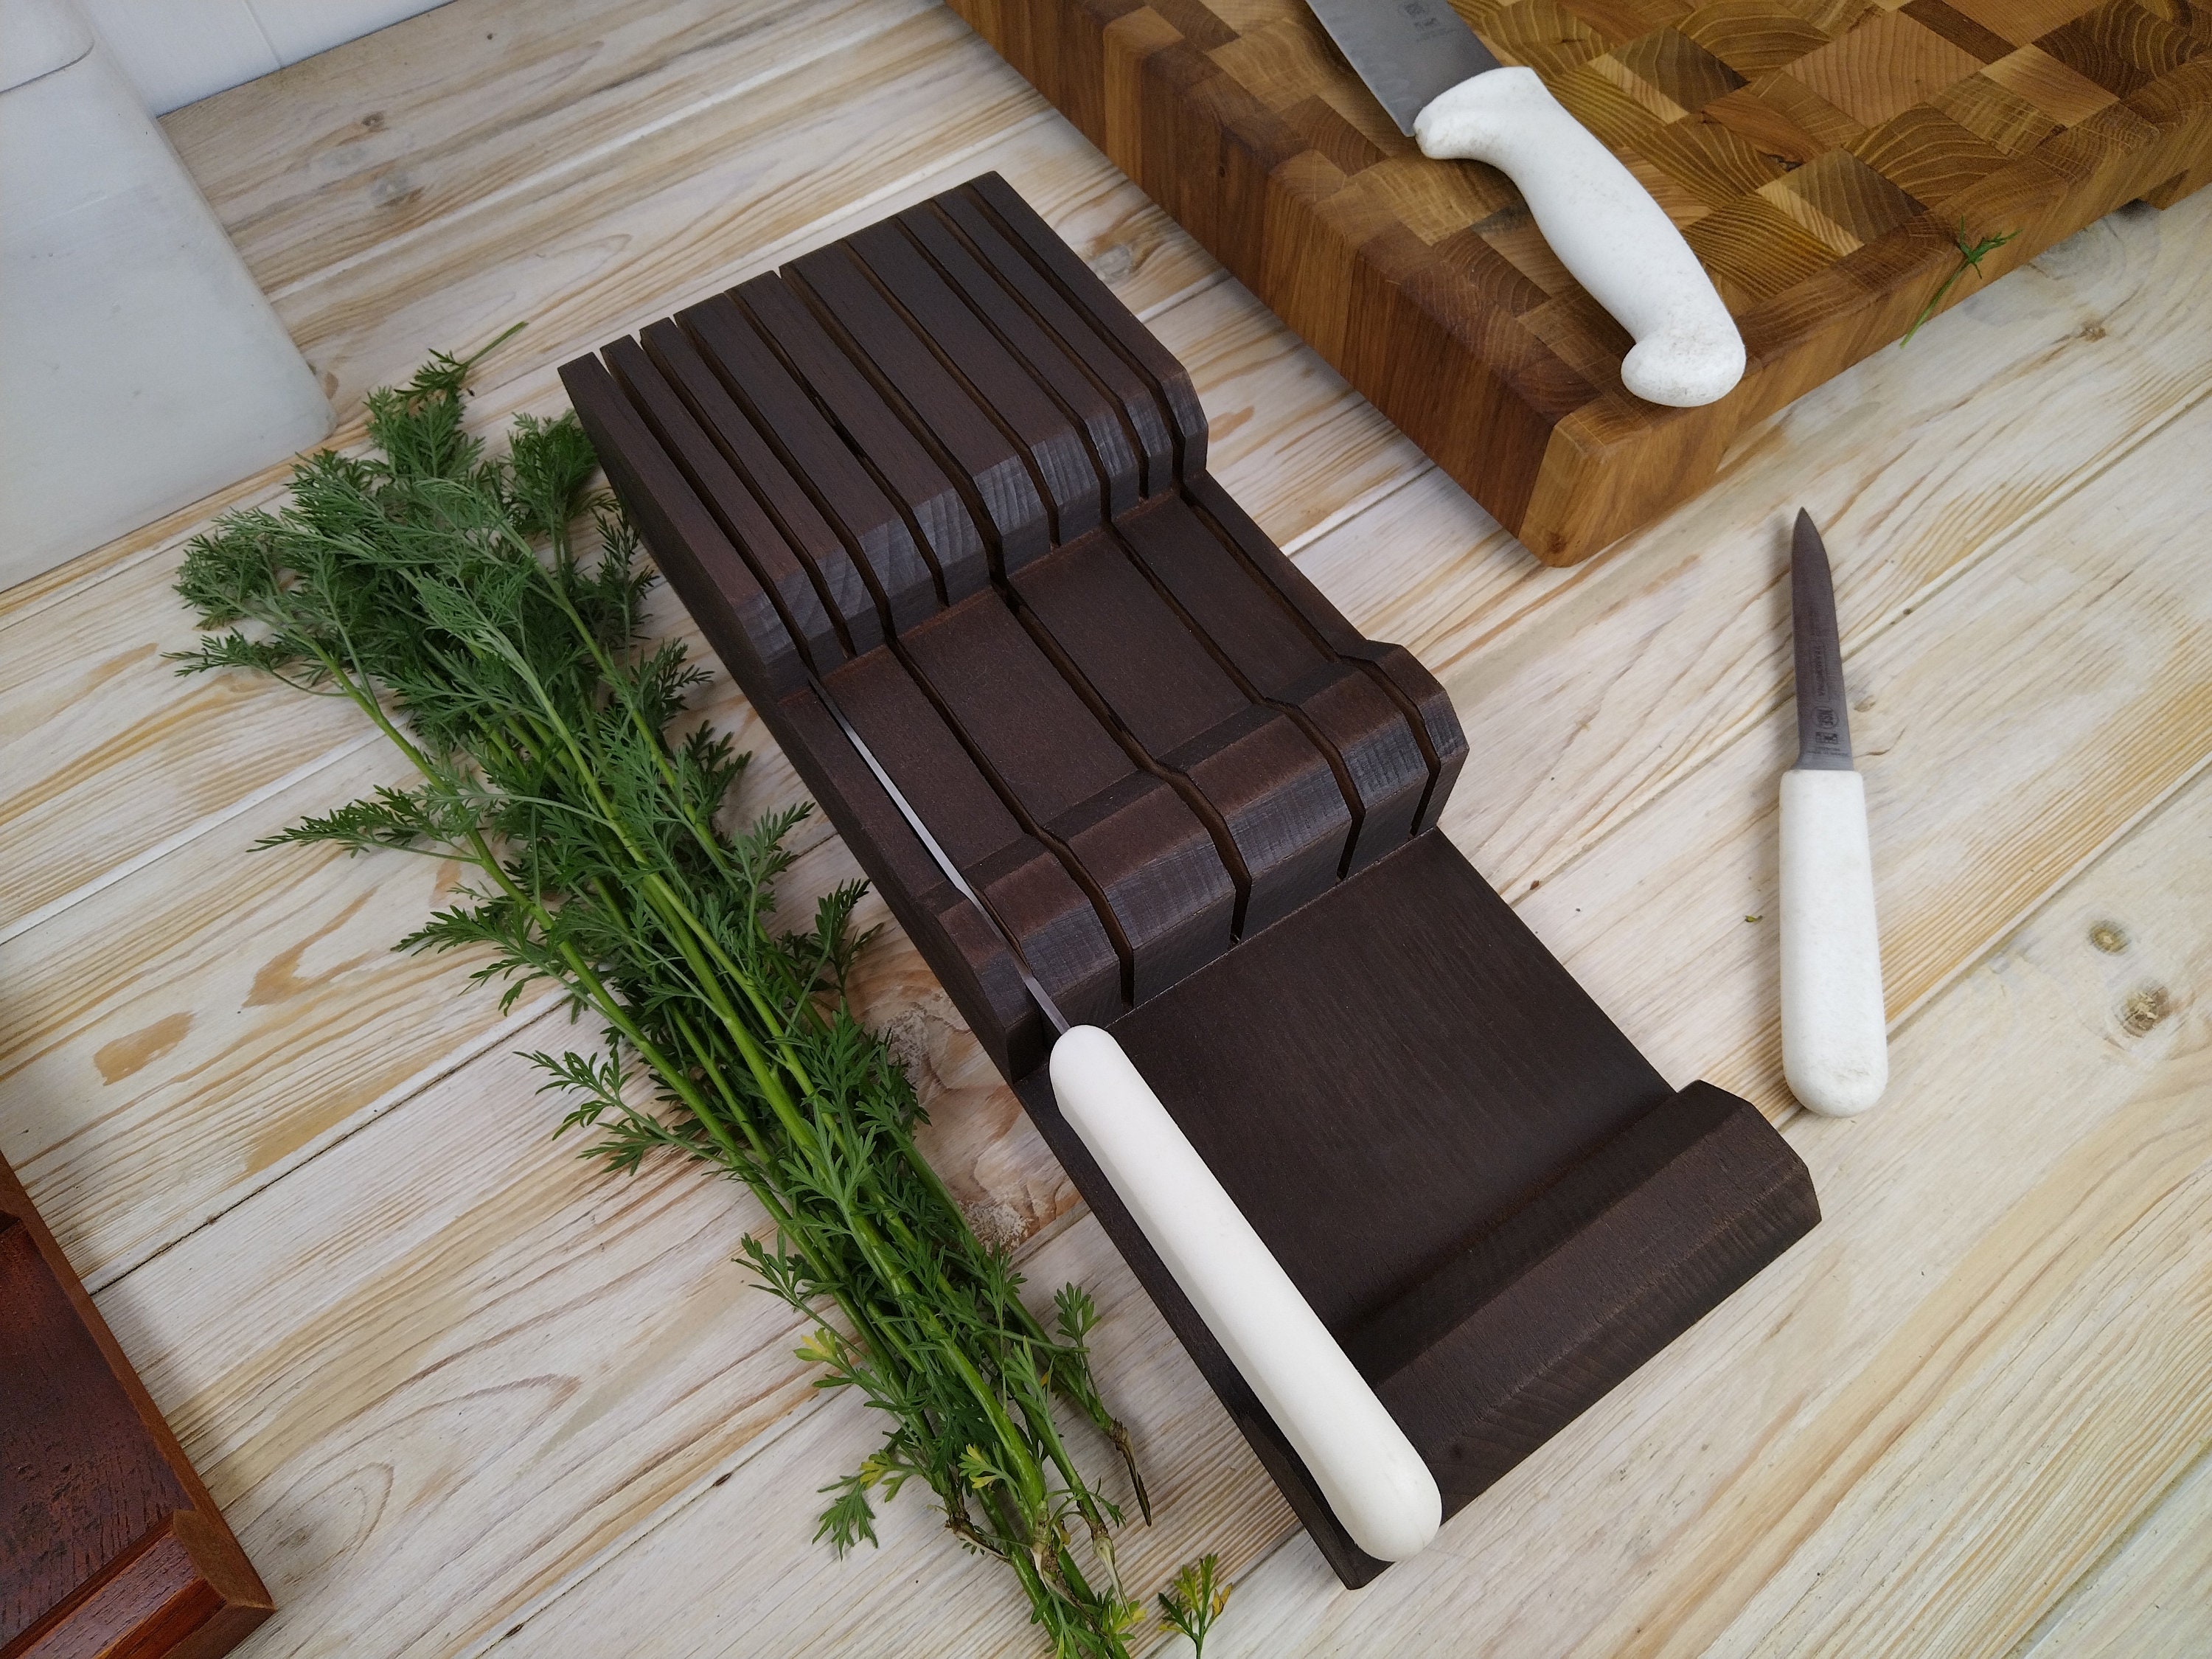 Premium Magnetic Steak Knife Holder - Wooden Knife Block for 6 or 8 Knives  – OmoiBox Visionary Creations